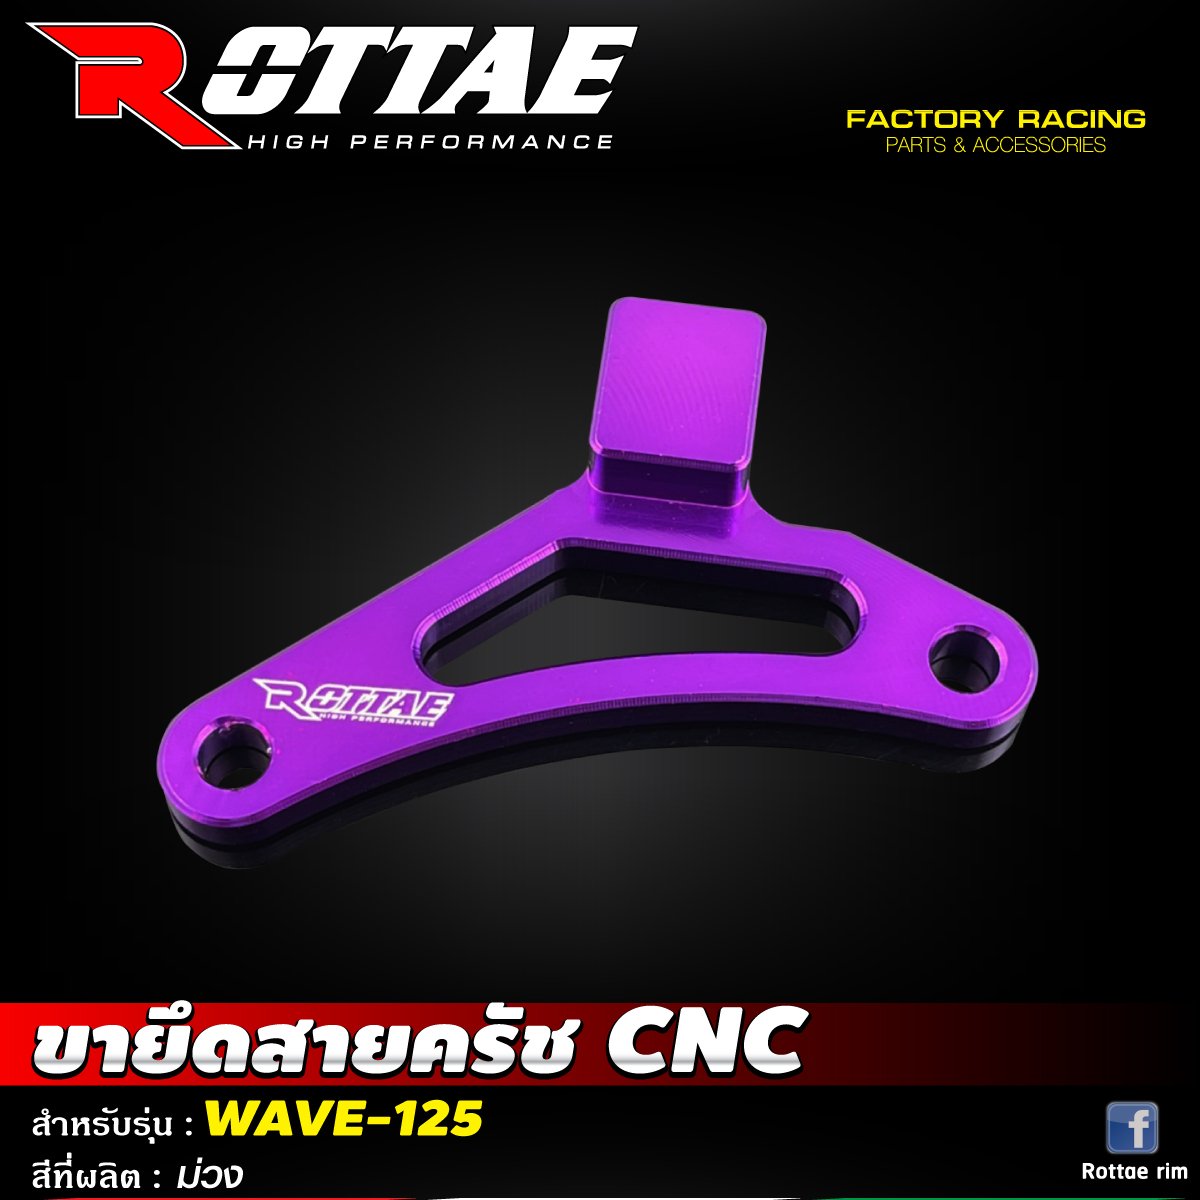 ขายึดสายครัช CNC #WAVE-125 ROTTAE สี ม่วง